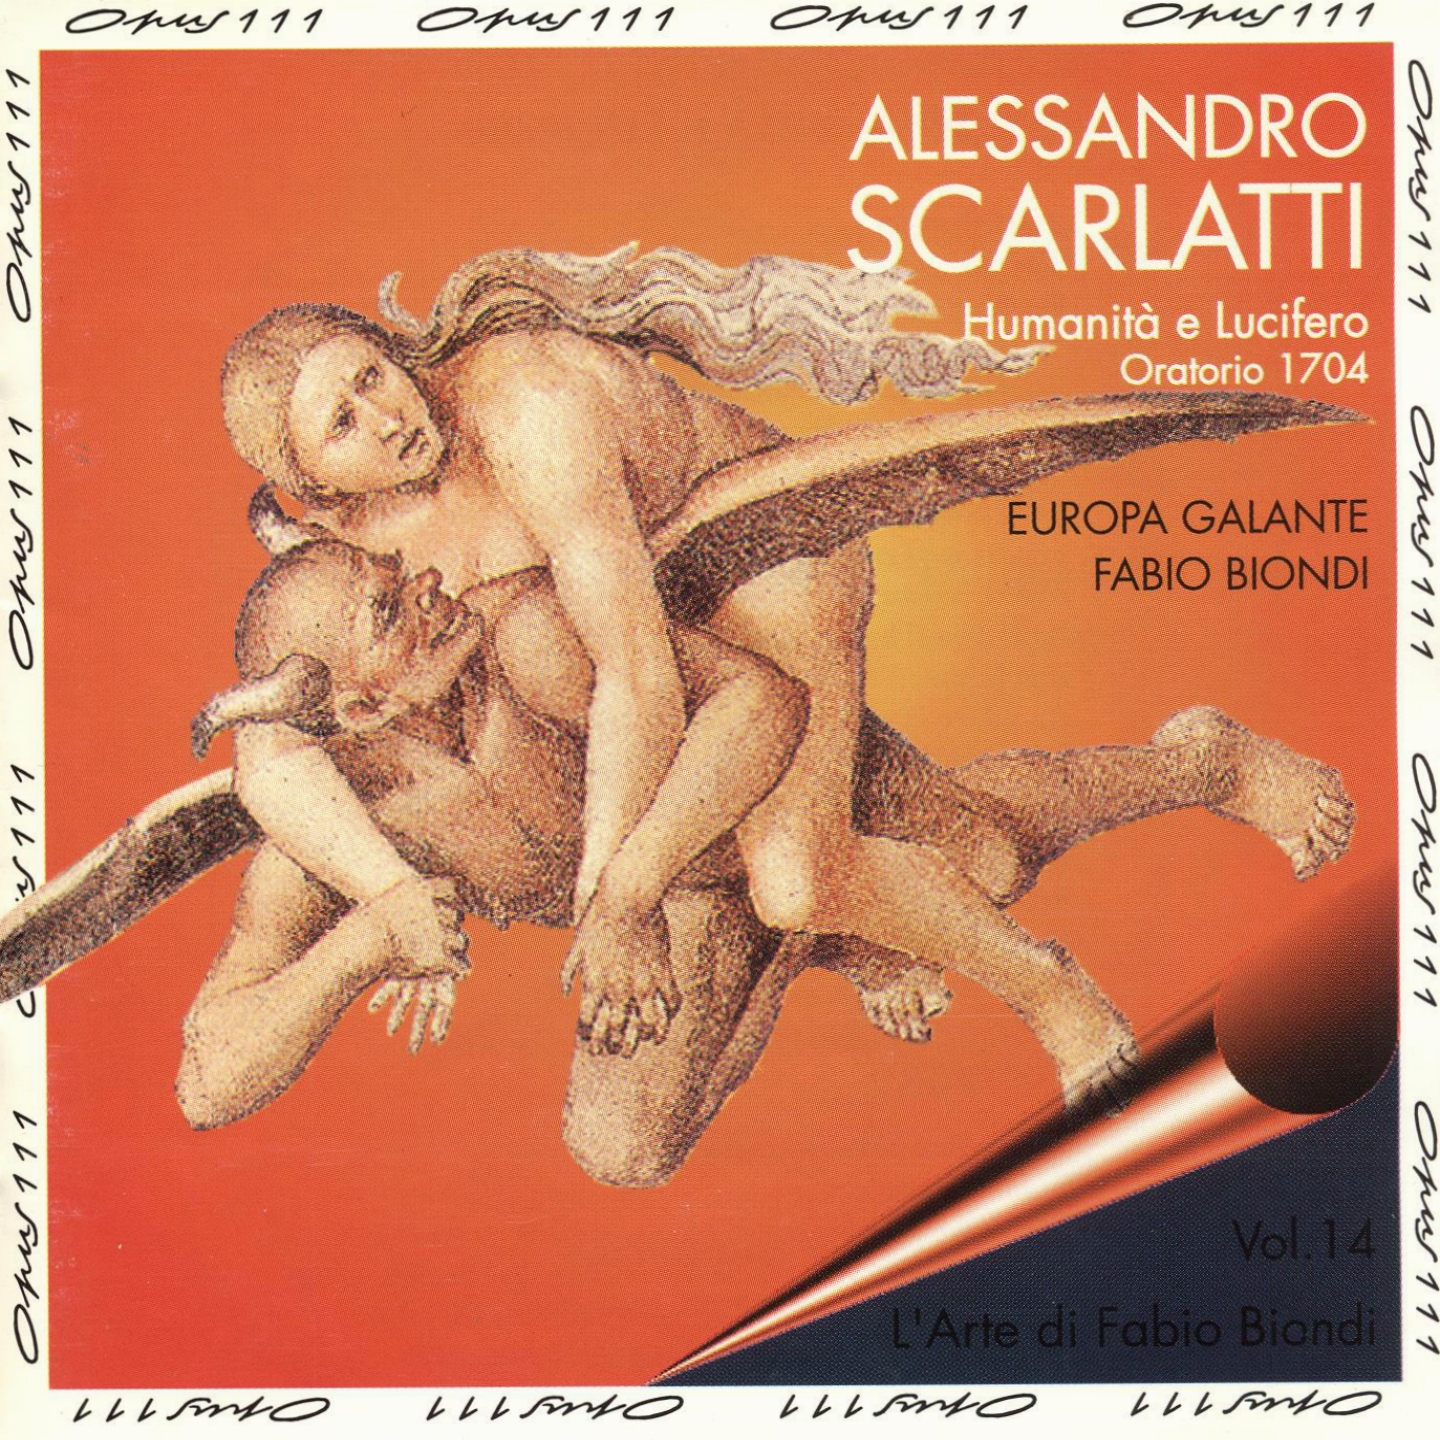 Scarlatti: Humanita e Lucifero